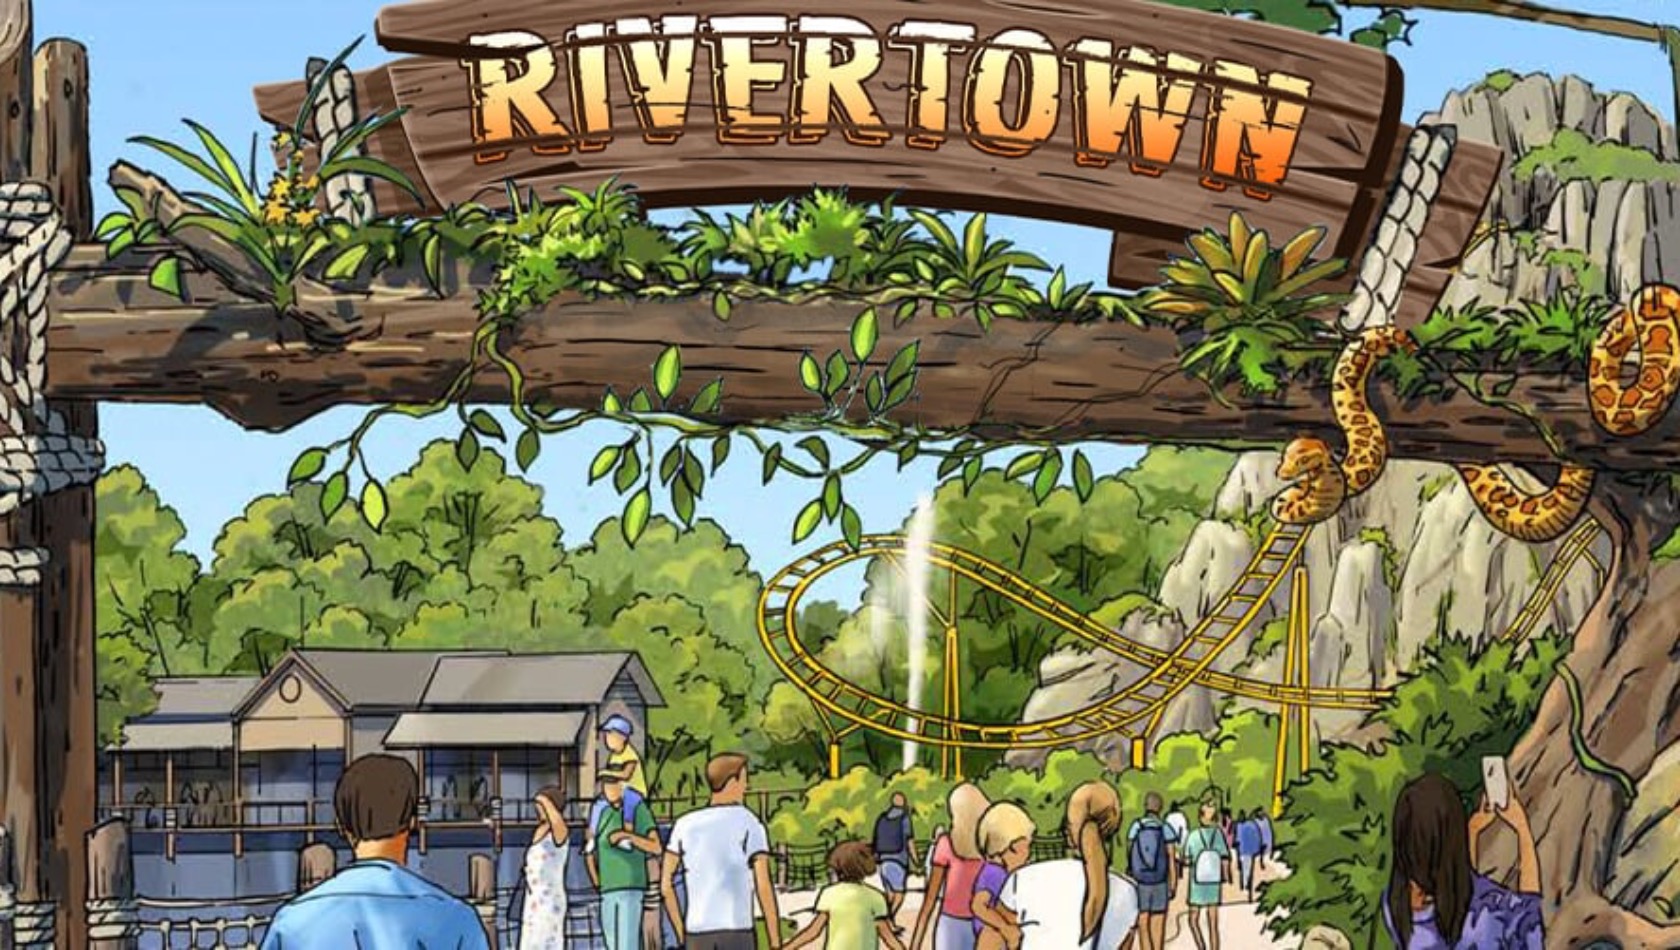 Konzept vom Eingang des neuen Themenbereichs River Town in Dreamworld